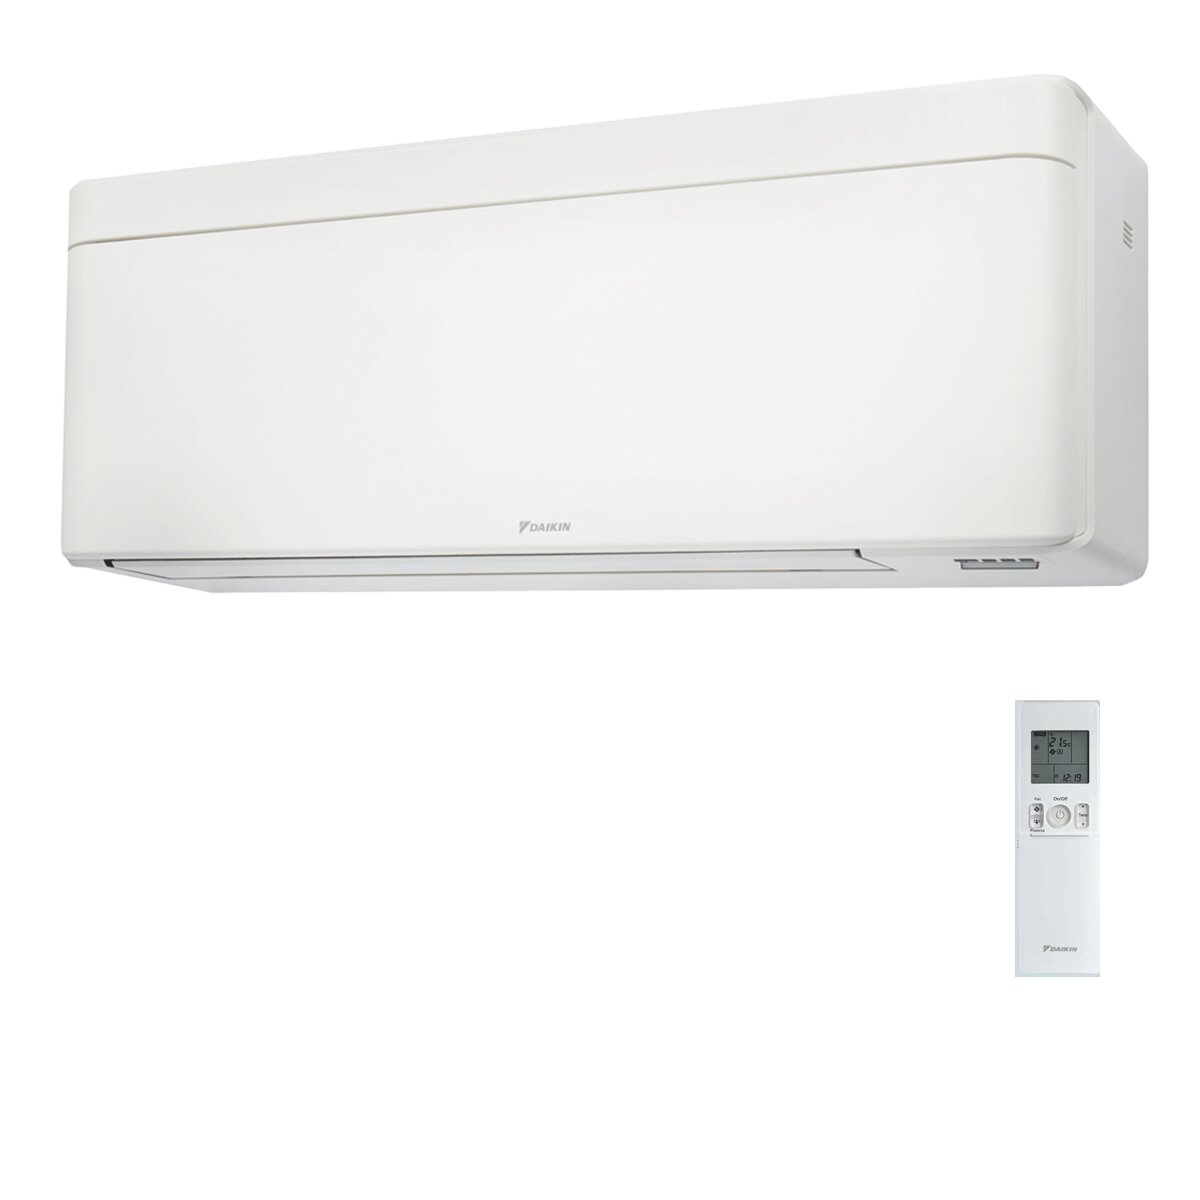 Daikin Stylish White 18000 BTU Inverter Air Conditioner A++ WiFi R32